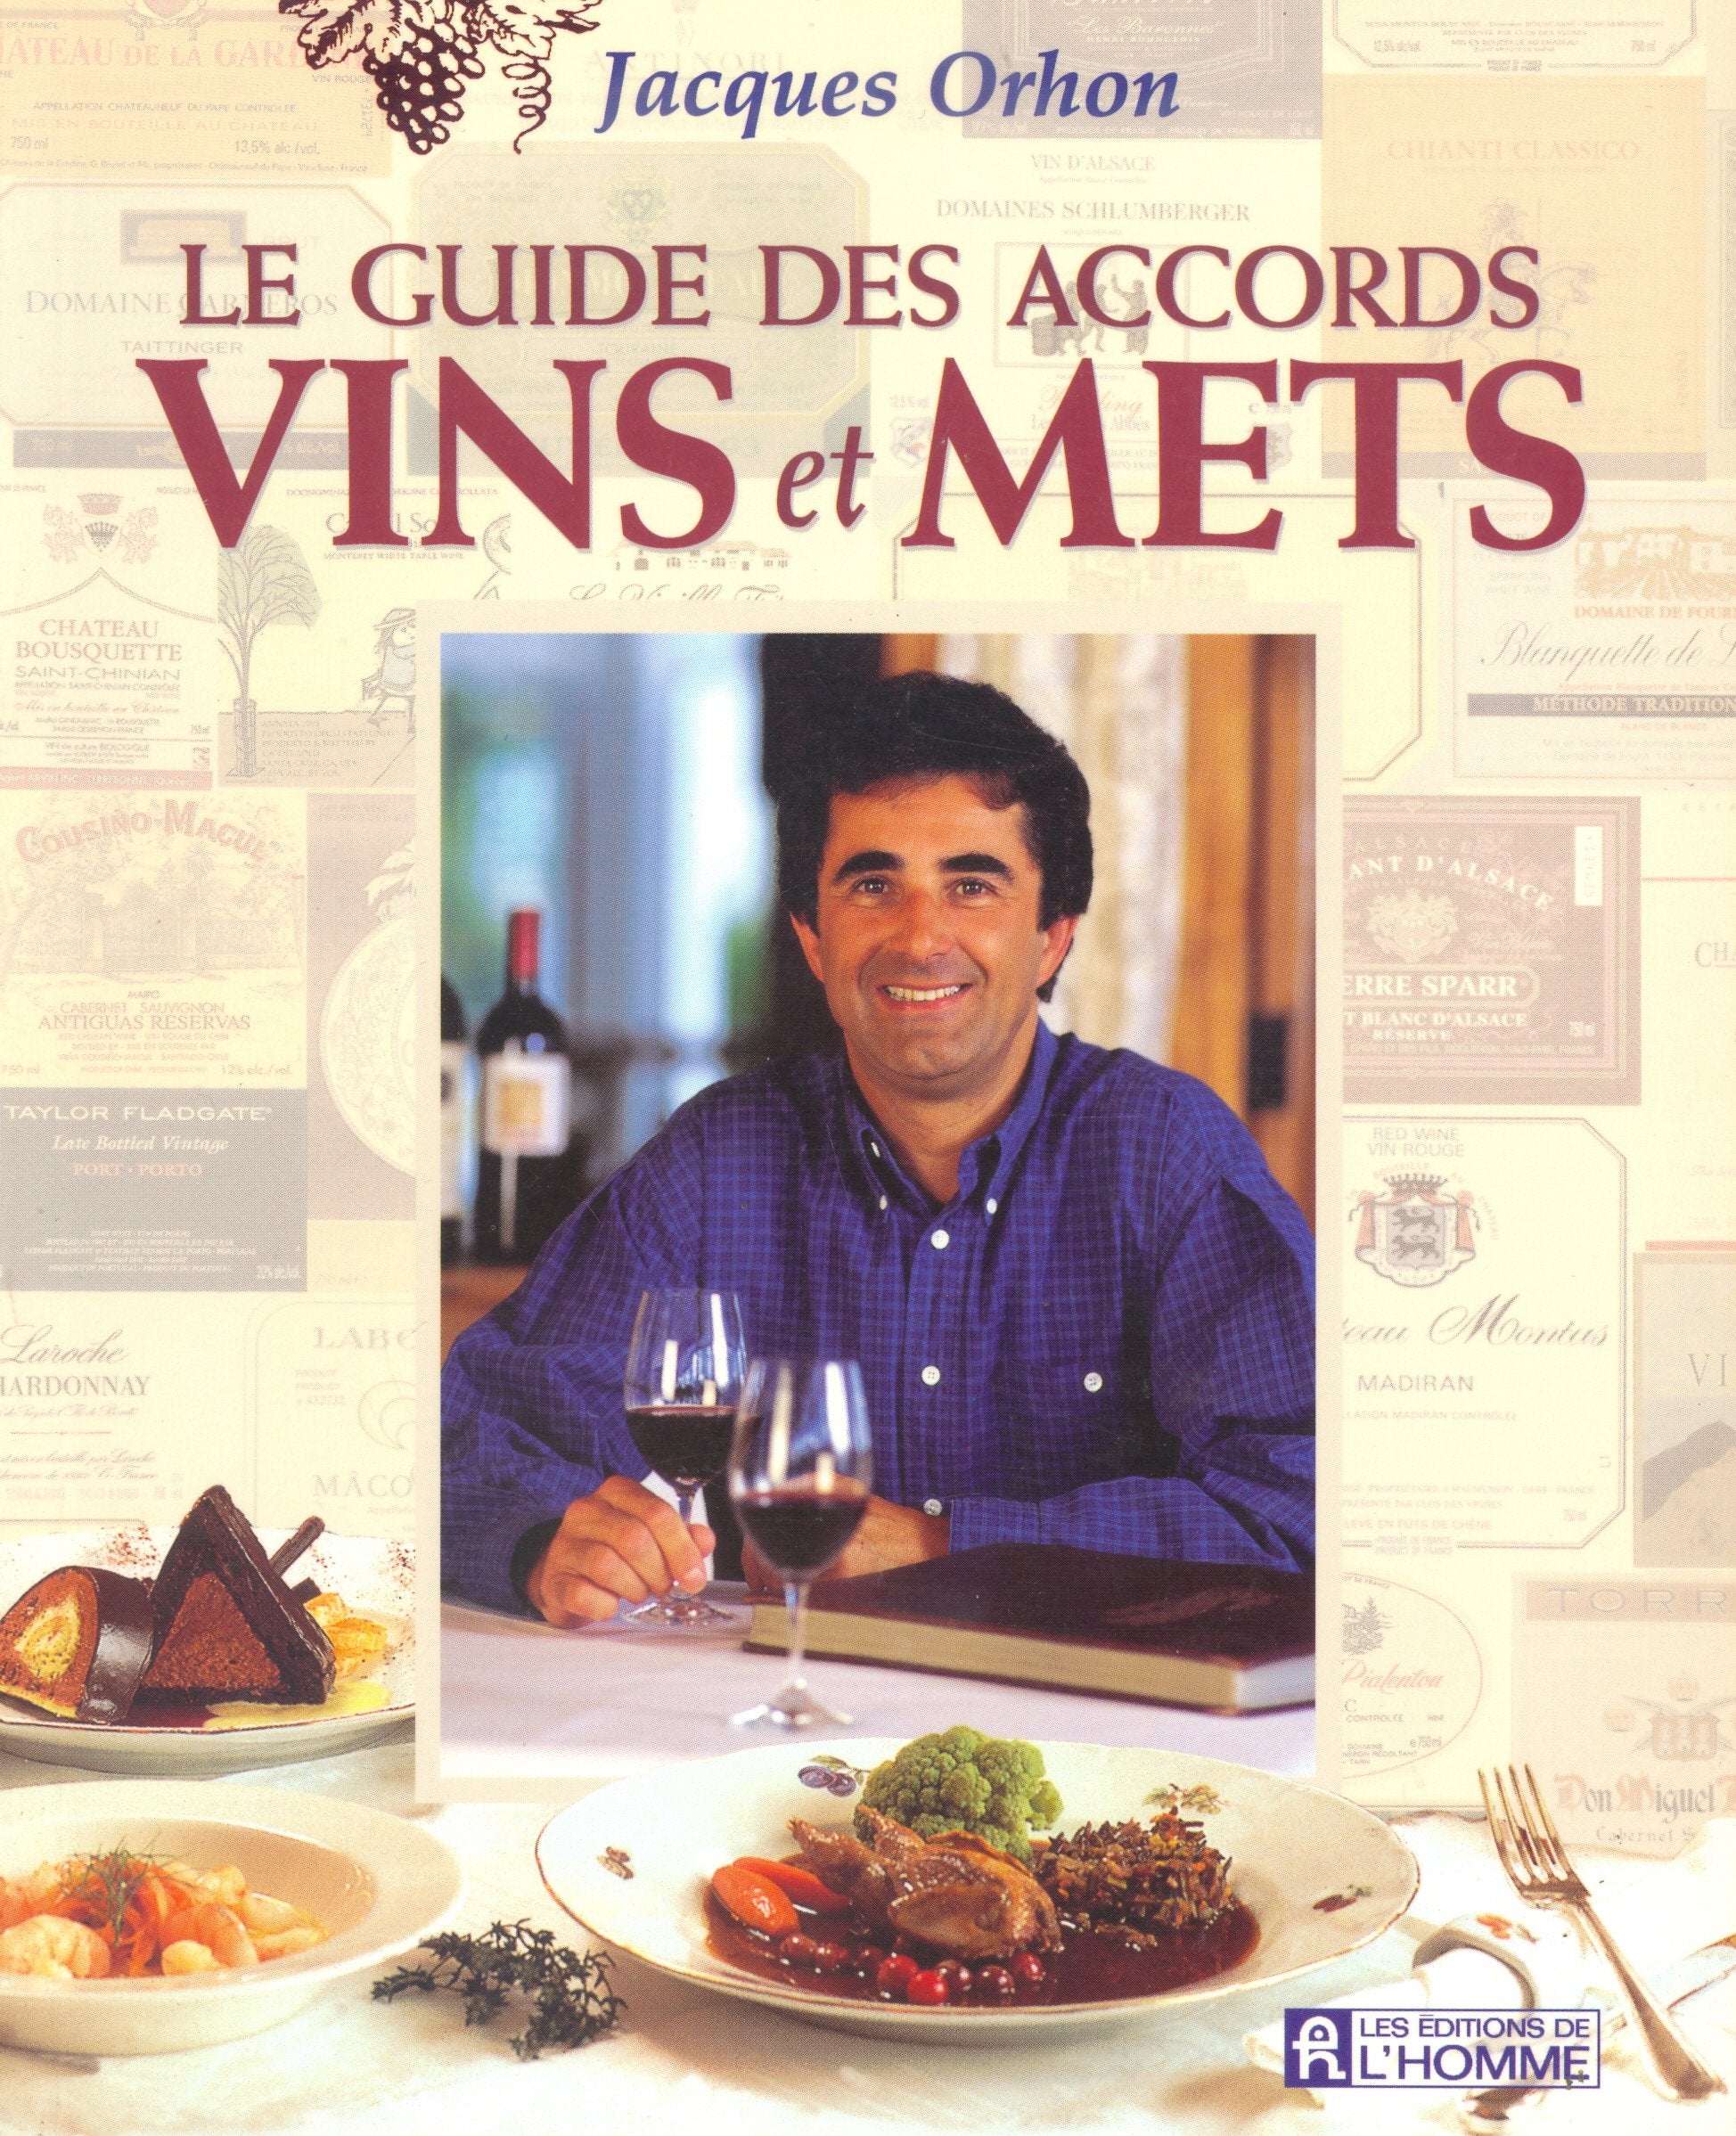 Le guide des accords vins et mets - Jacques Orhon